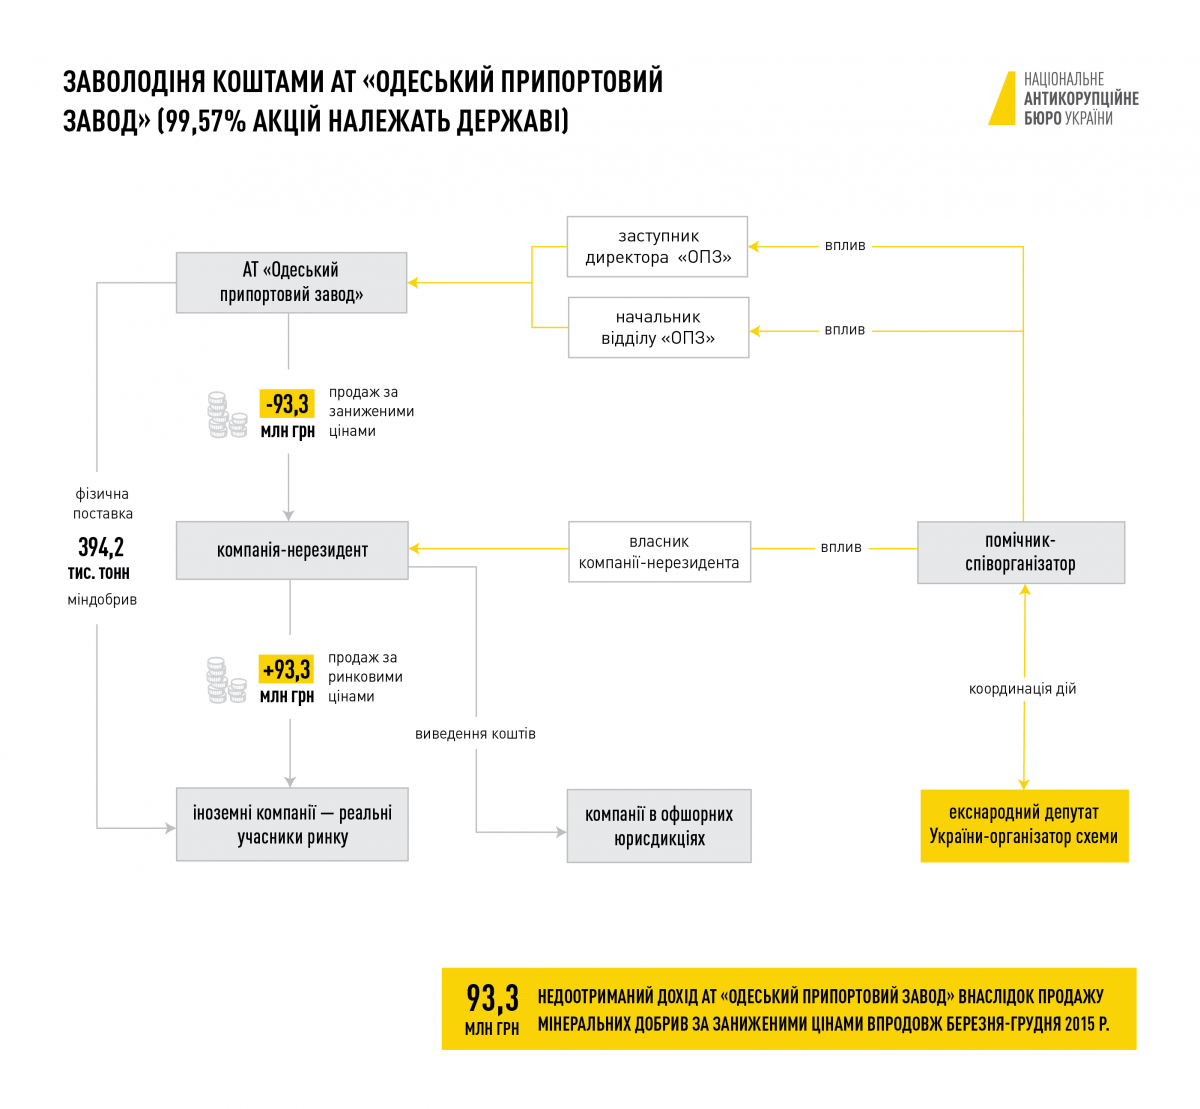 НАБУ и САП сообщили о подозрении экс-нардепа: подозревают в организации коррупционной схемы на "Одесском припортовом заводе"